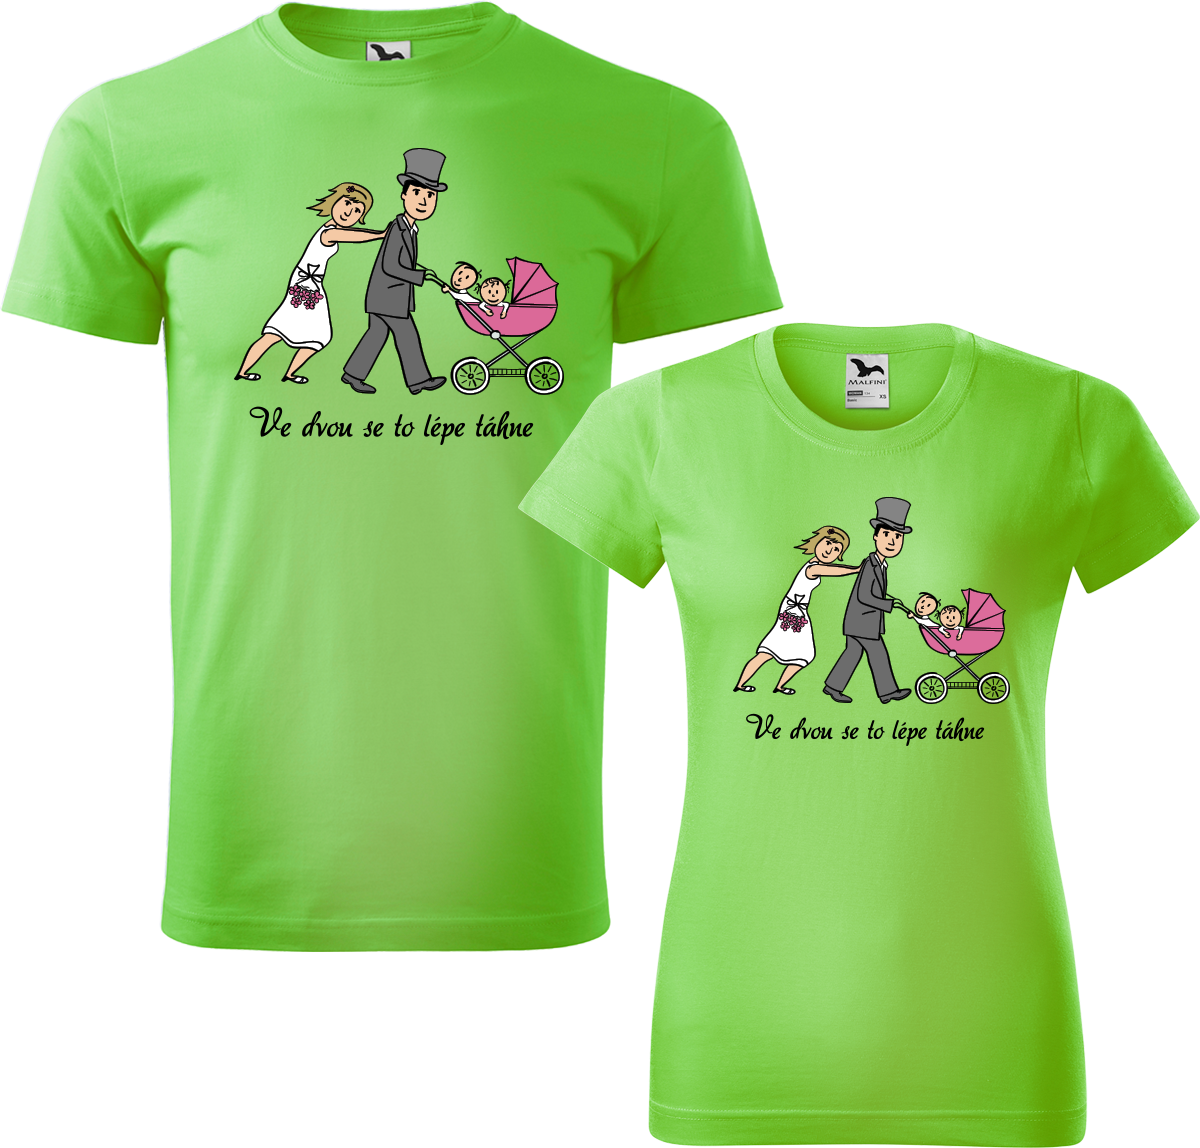 Trička pro páry - Ve dvou se to lépe táhne (kočárek) Barva: Apple Green (92), Velikost dámské tričko: S, Velikost pánské tričko: M